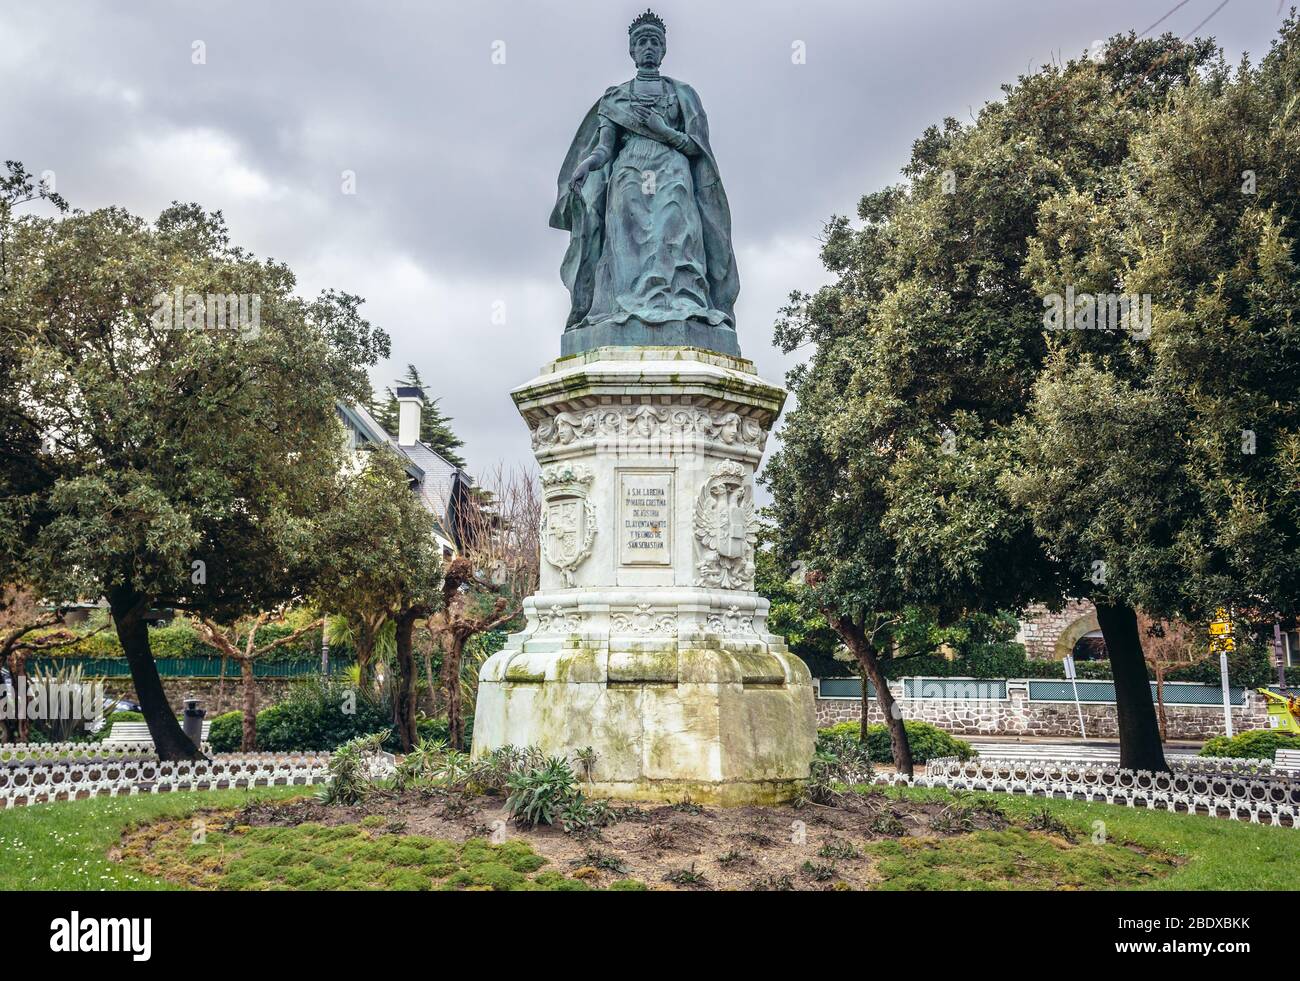 Statua di Maria Christina d'Austria nel Parco Ondarreta di San Sebastian città costiera situata nella Comunità Autonoma Basca, Spagna Foto Stock